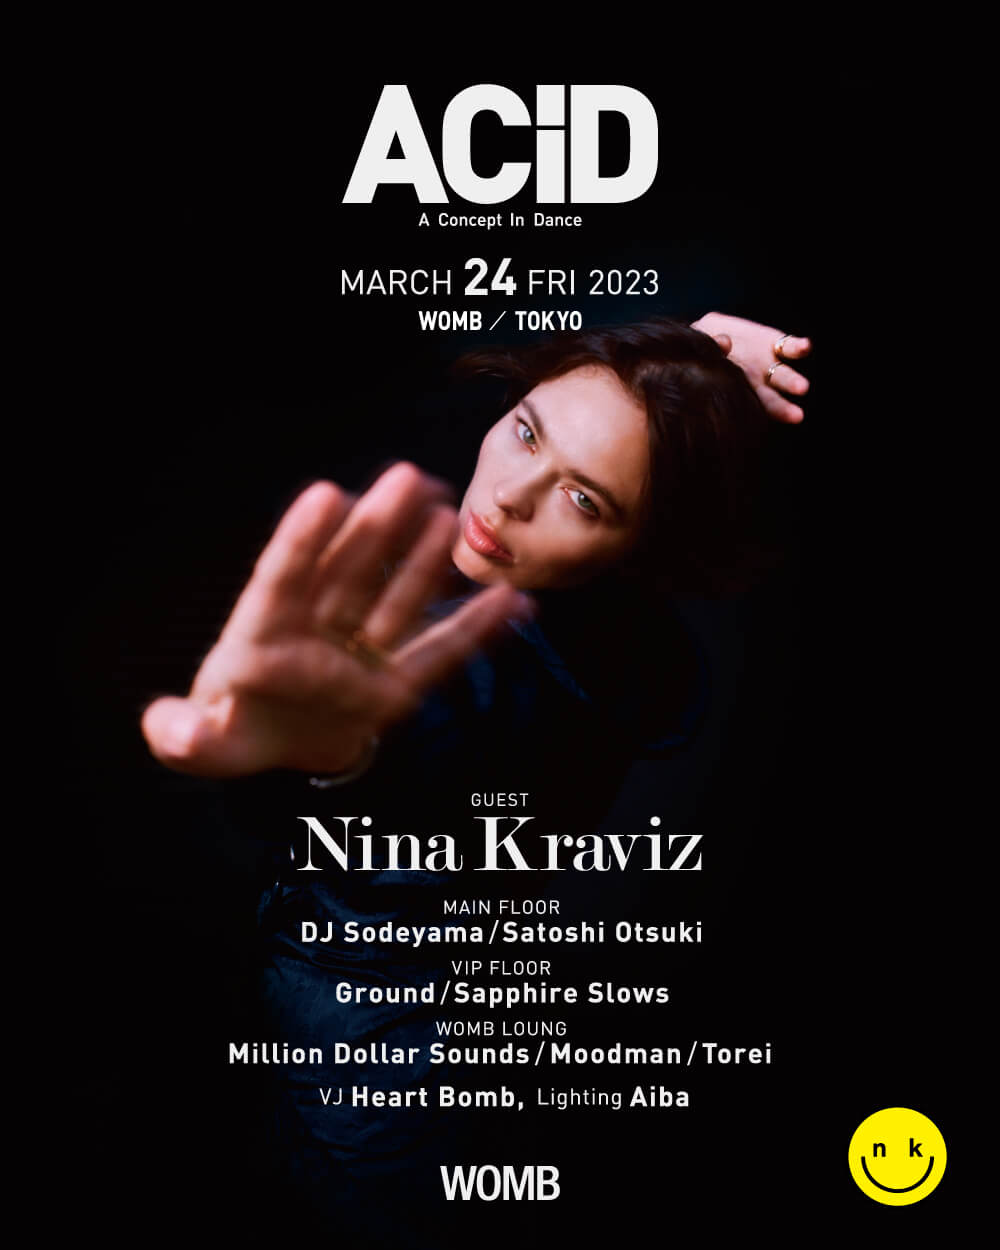 ACiD: A Concept in Dance - Nina Kraviz